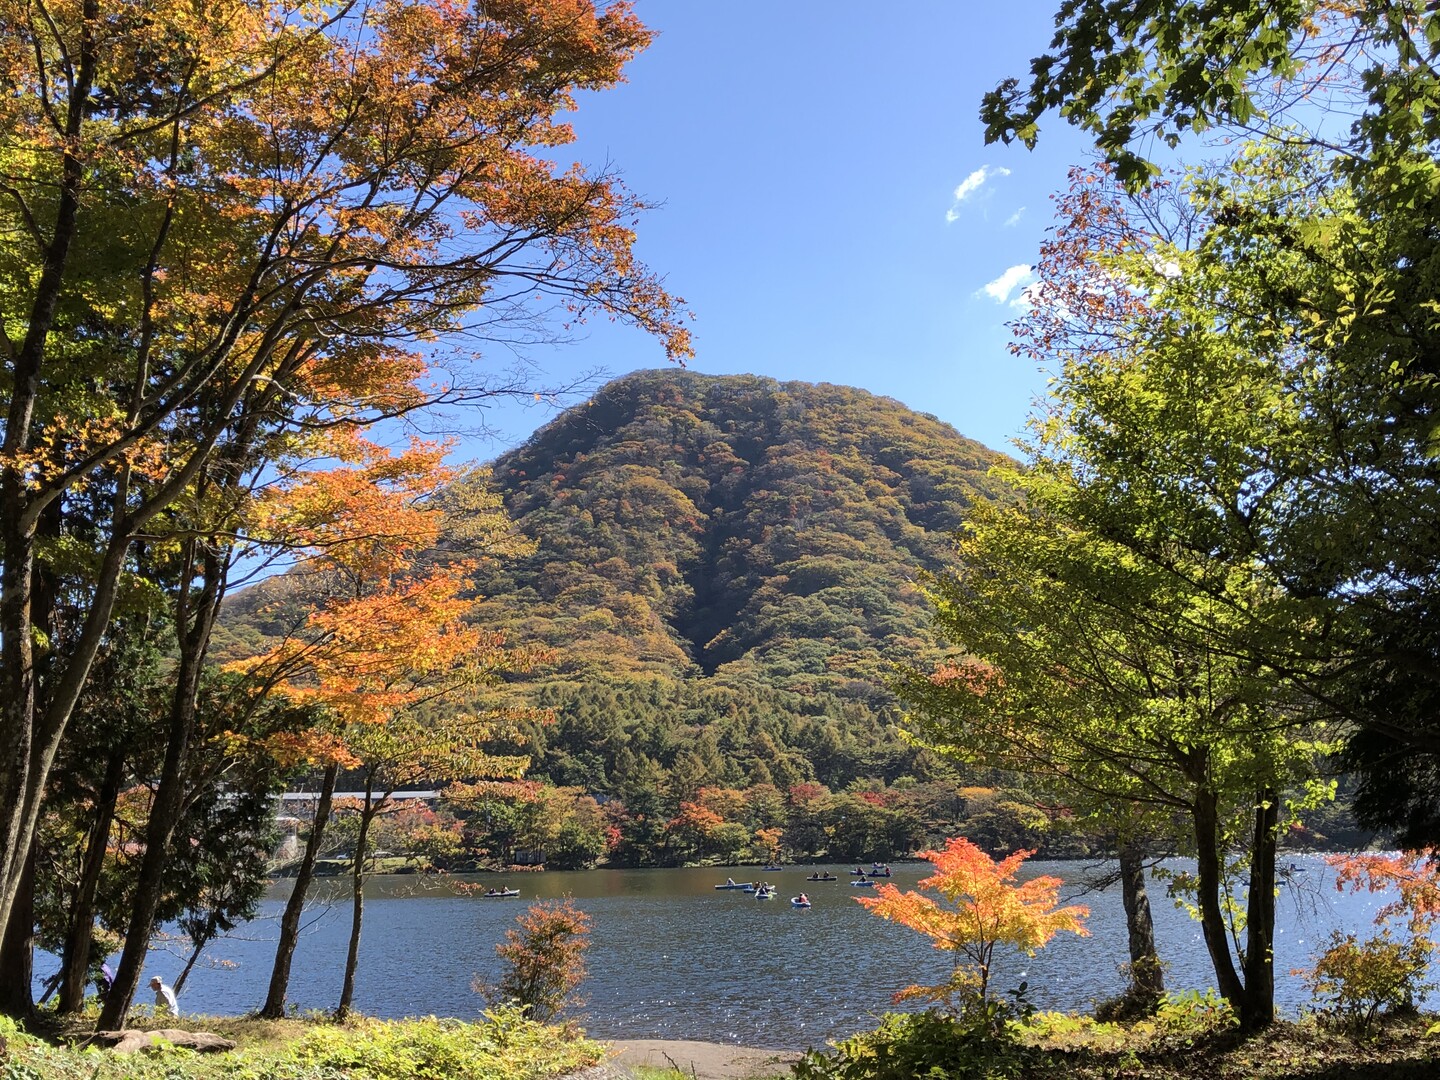 榛名山へ紅葉登山 榛名富士から掃部ヶ岳へ Fumi3110さんの榛名山 天狗山 天目山の活動データ Yamap ヤマップ